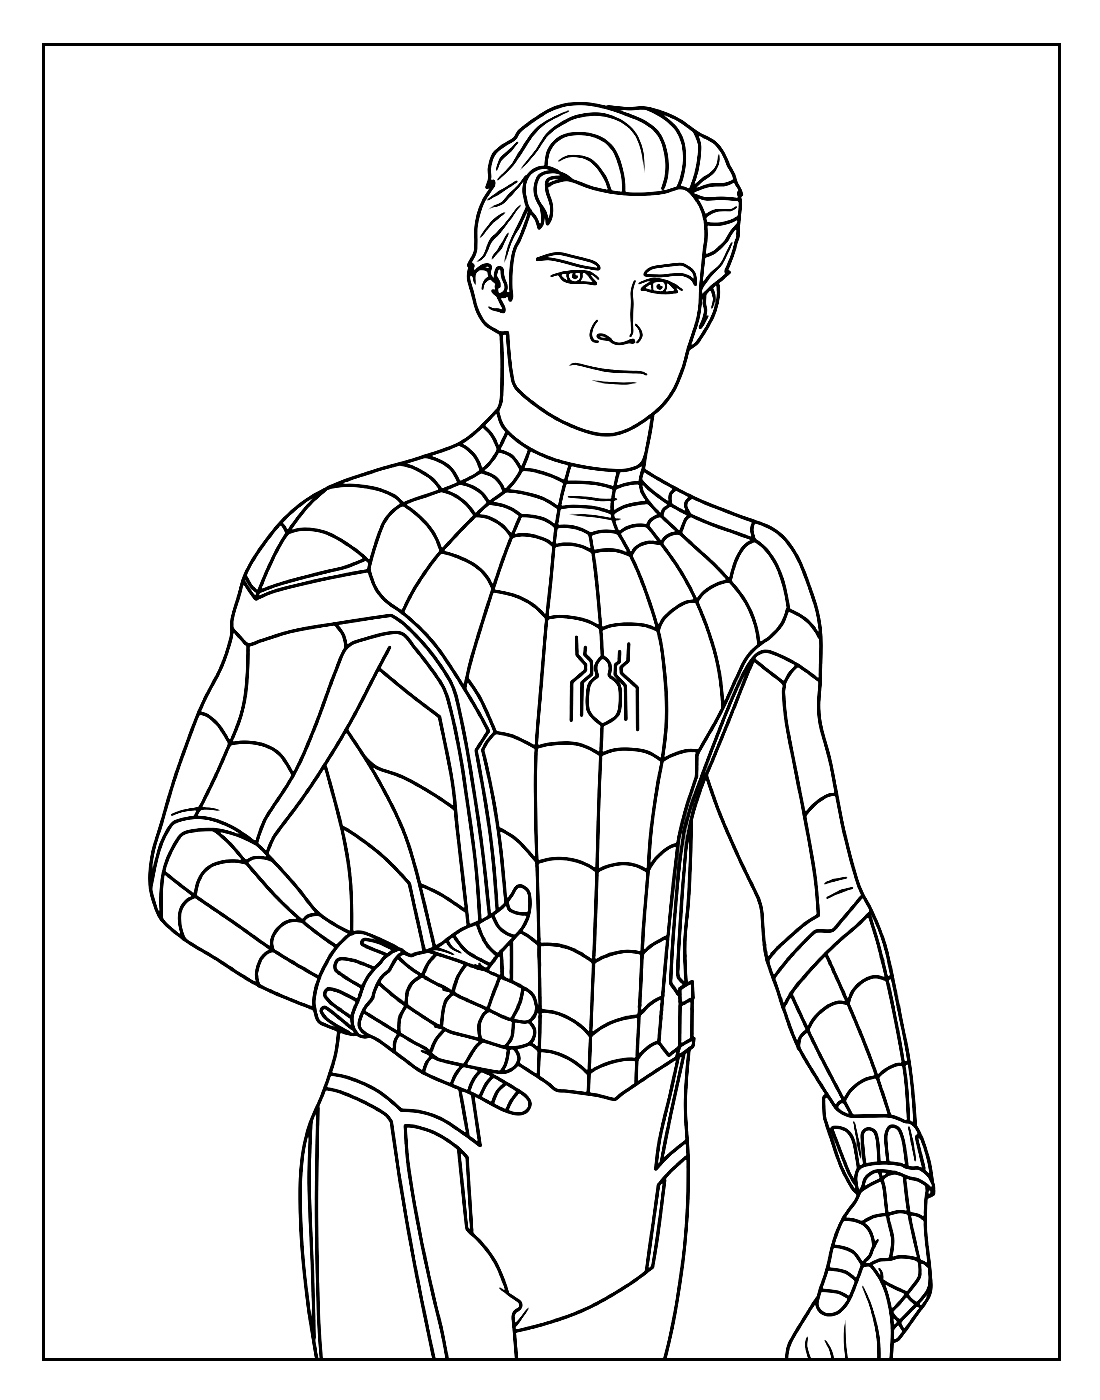 Desenho para colorir de Homem-Aranha sem máscara